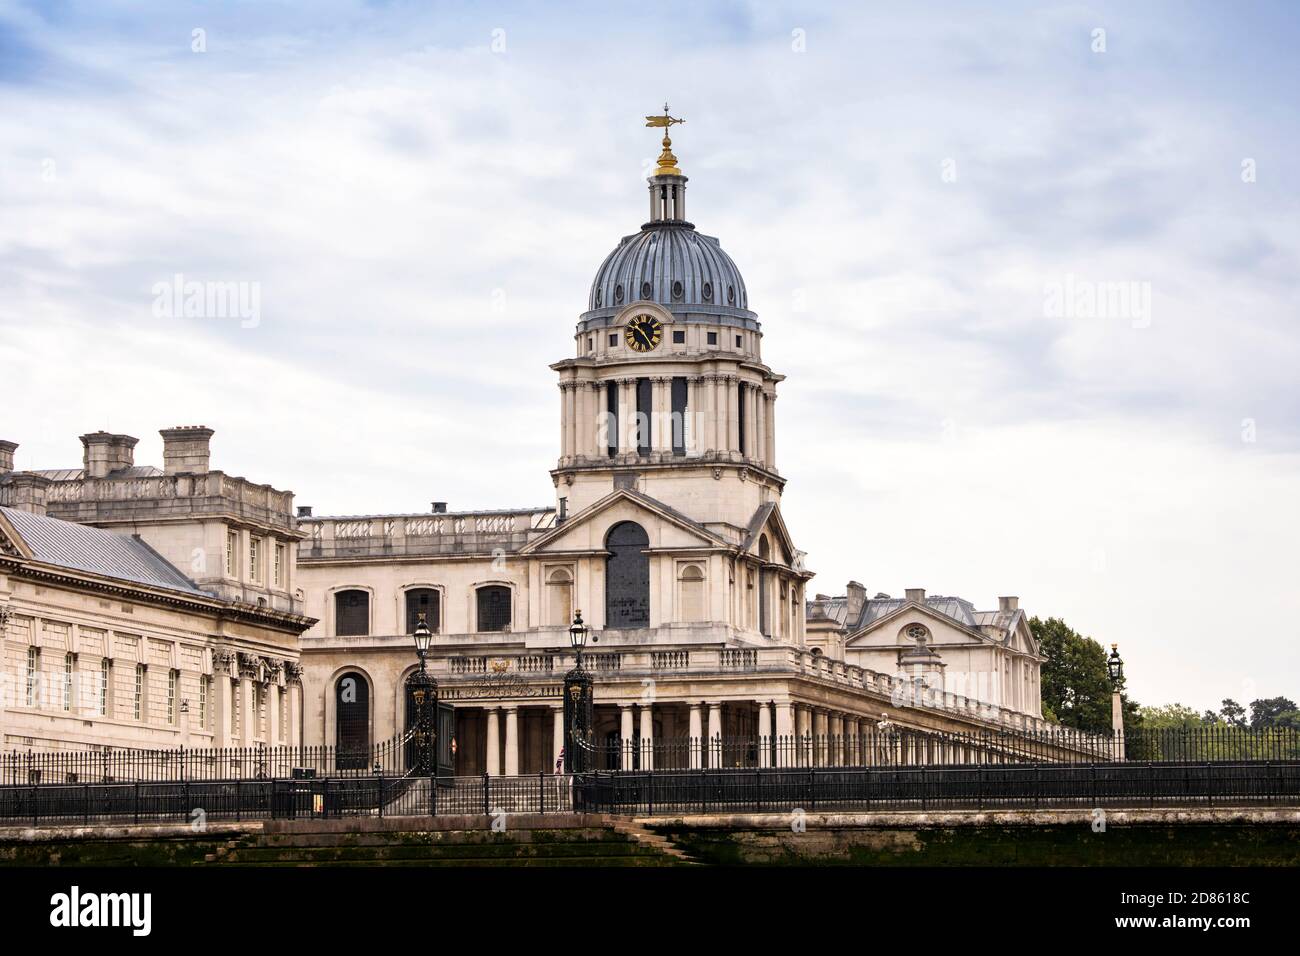 Regno Unito, Londra, Greenwich, Royal Naval College Buildings, progettato da Sir Christopher Wren come Royal Hospital per i marinai a Greenwich Foto Stock